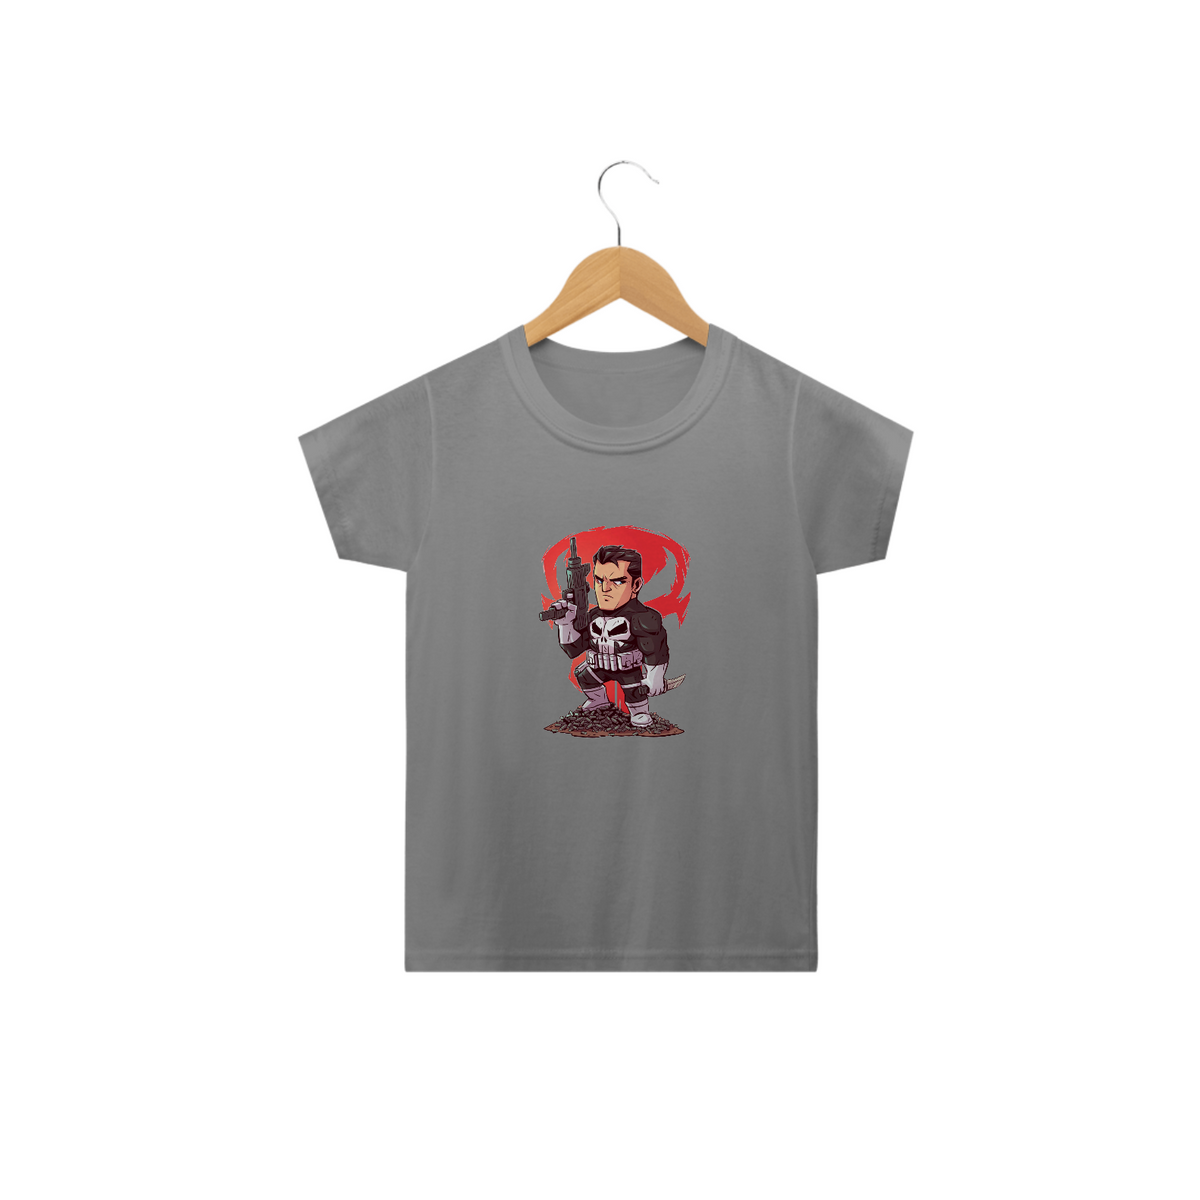 Nome do produto: Camiseta Infantil Justiceiro - Miniatura